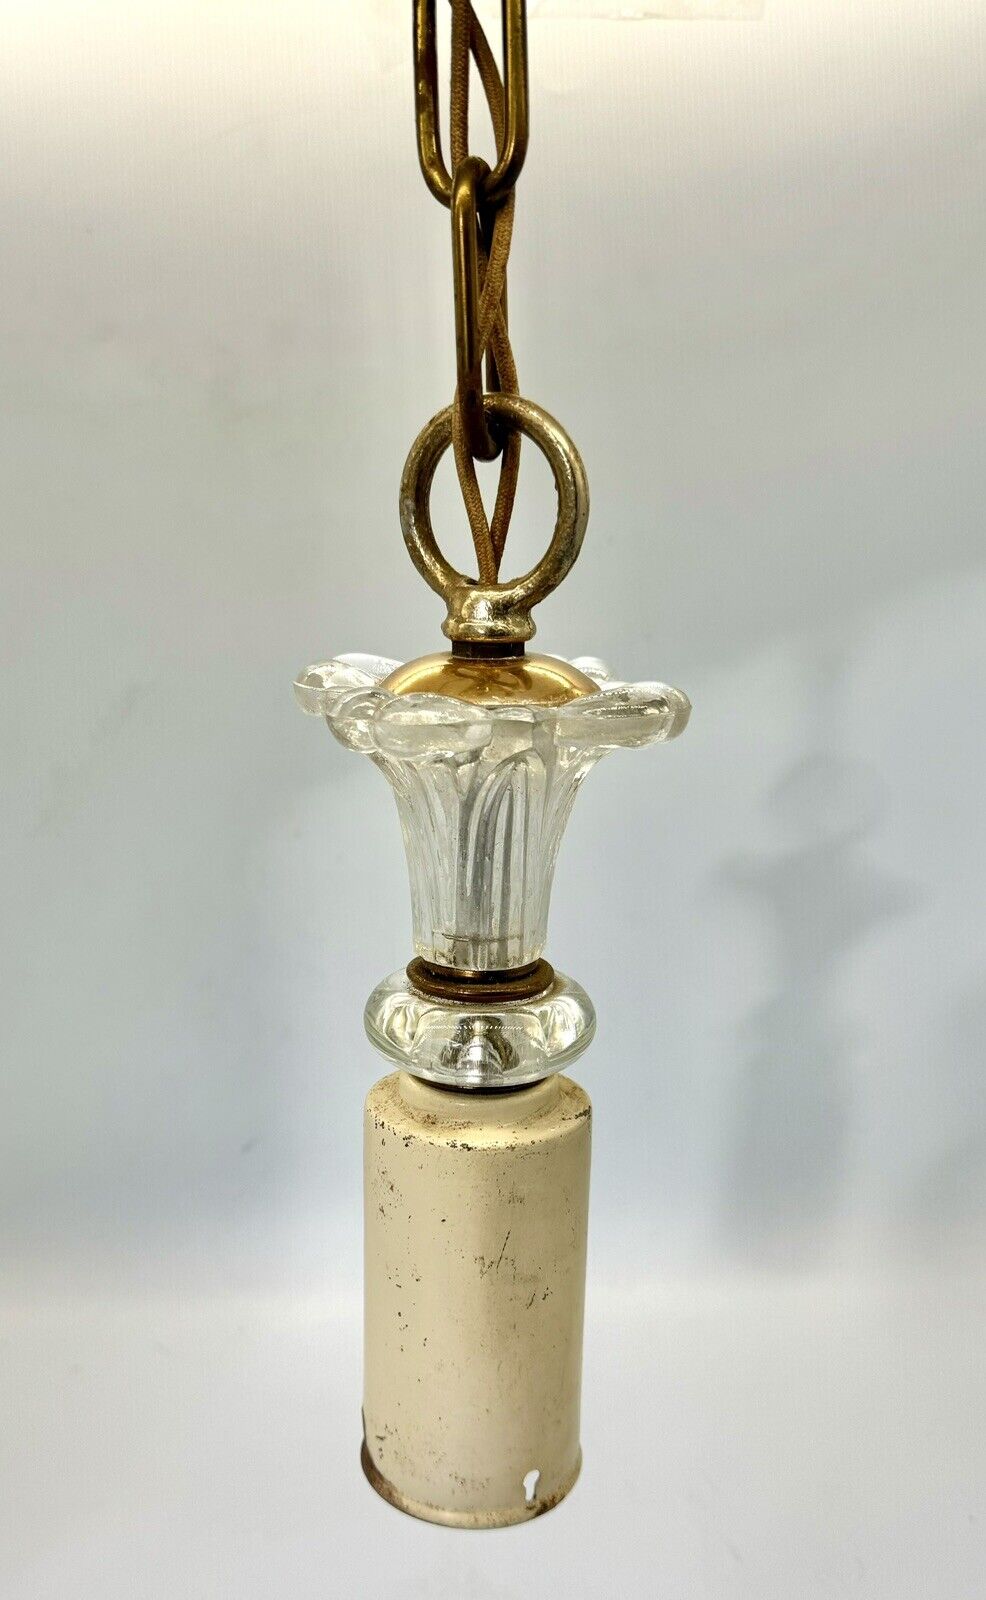 Vintage Glass Copper Brass Hanging 1-light Pendant Ceiling Light Fixture Unique